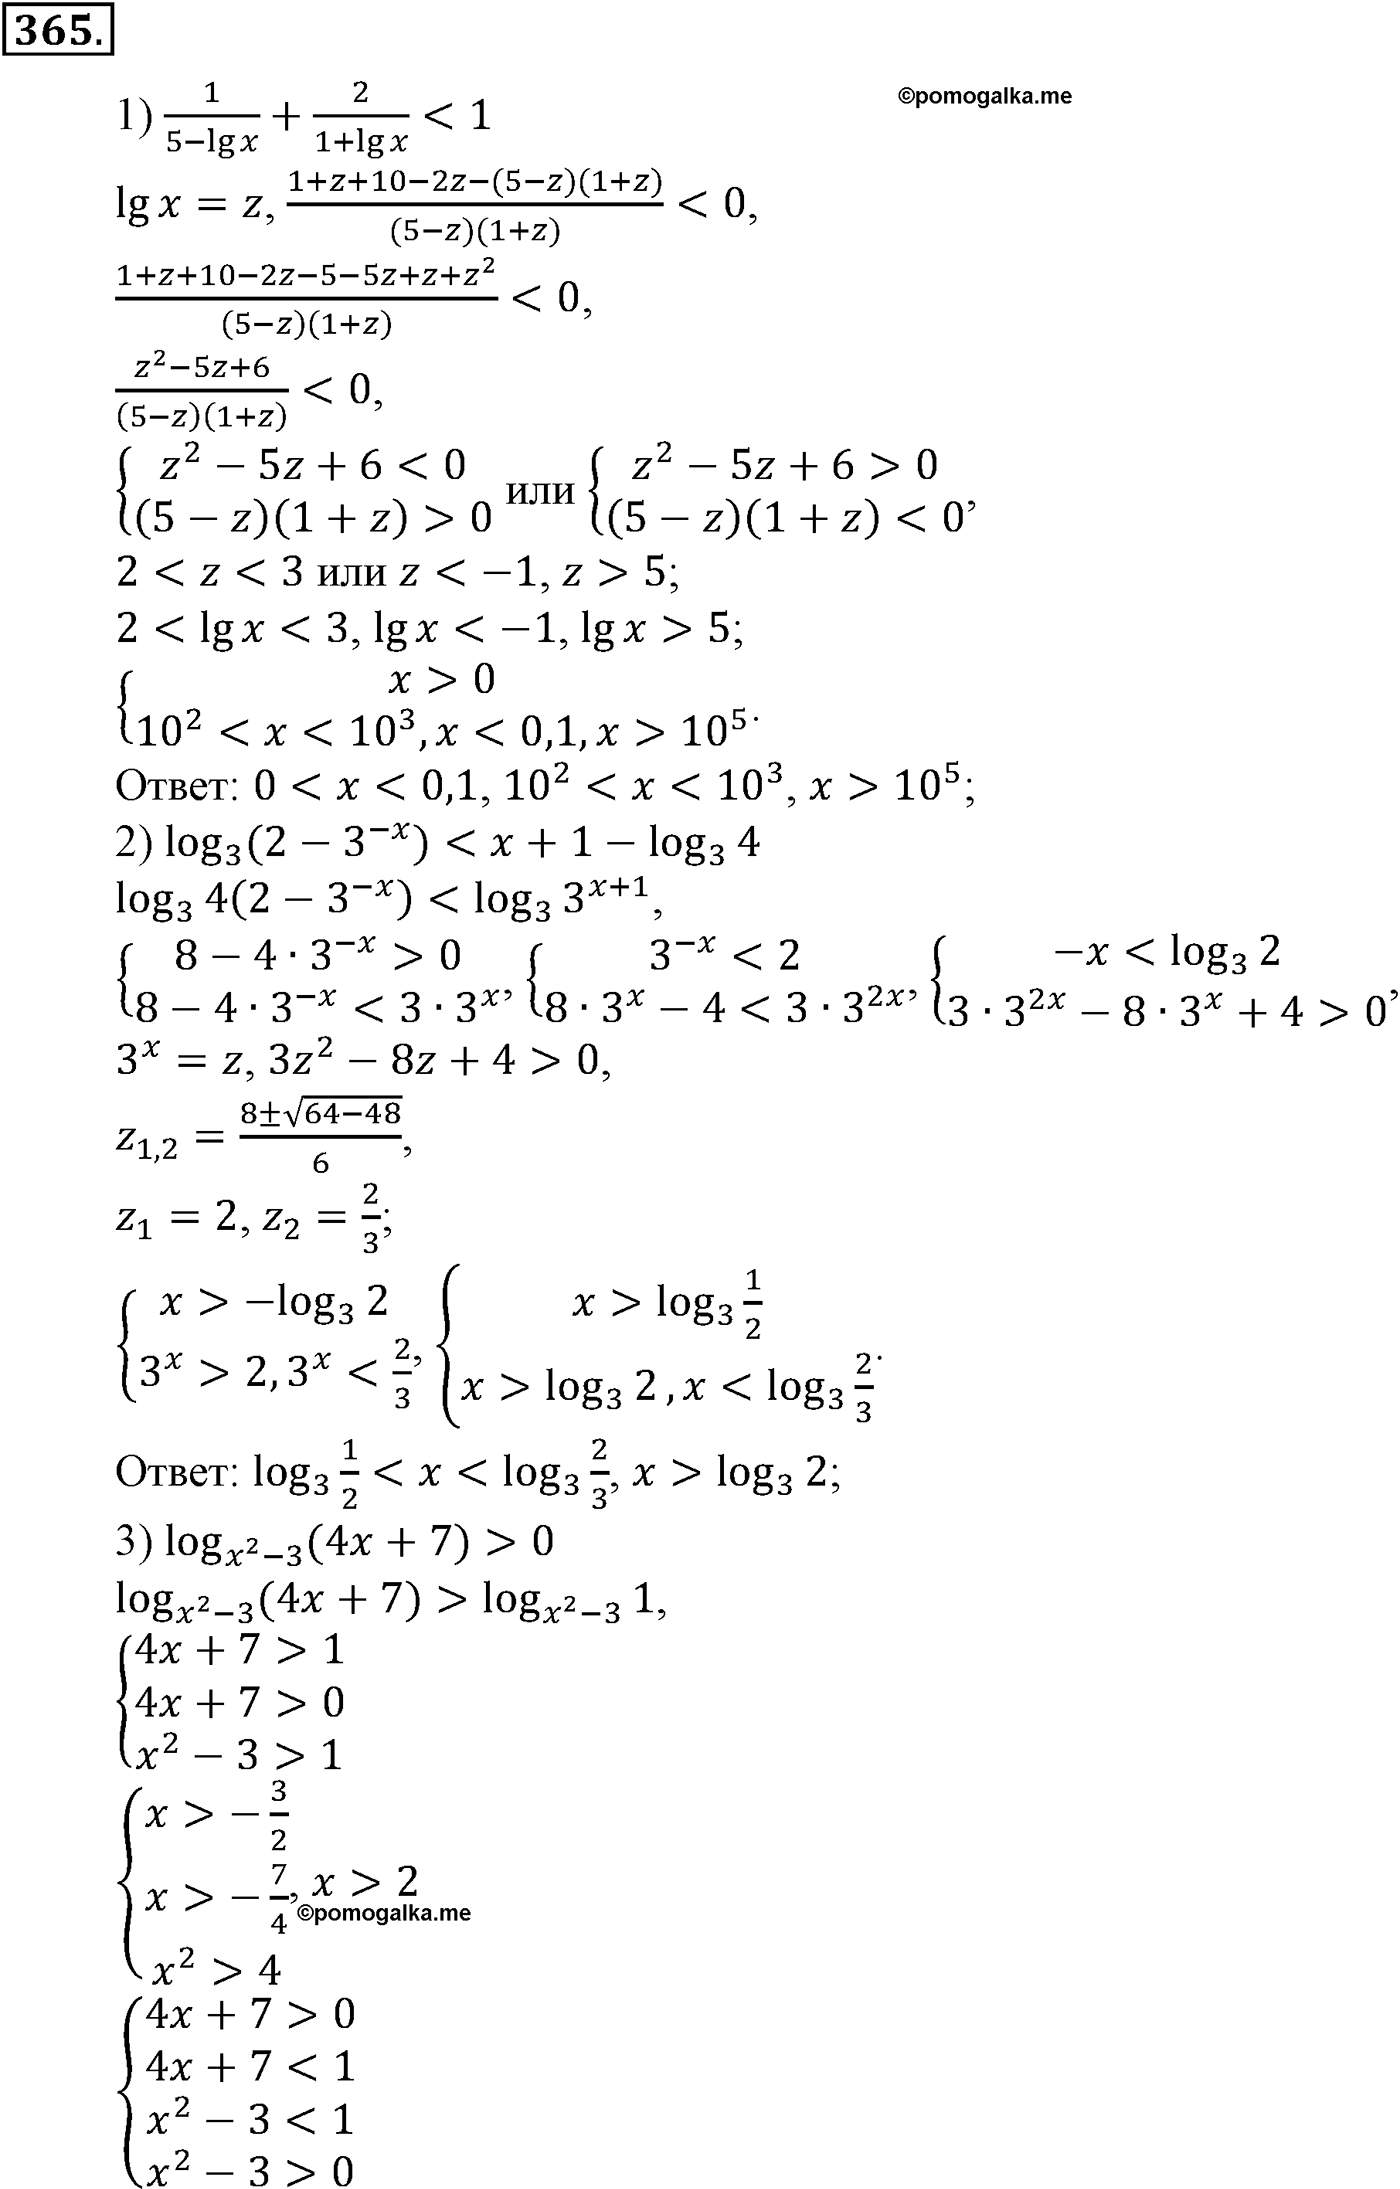 разбор задачи №365 по алгебре за 10-11 класс из учебника Алимова, Колягина